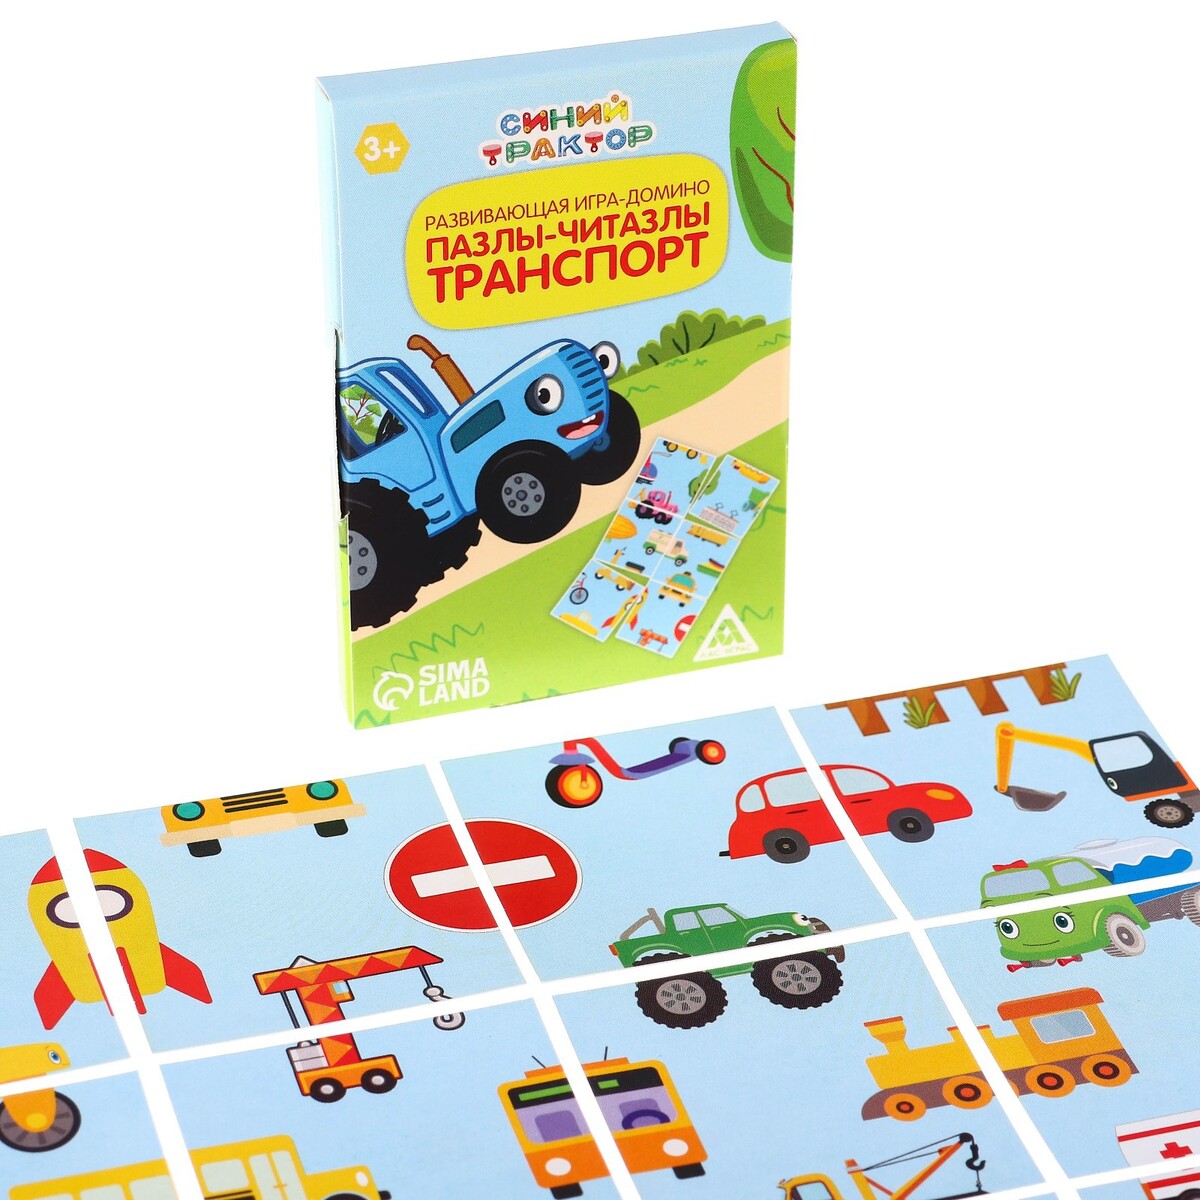 Логомозайка учим транспорт, игра пасьянс, синий трактор учим математику детям от 6 лет